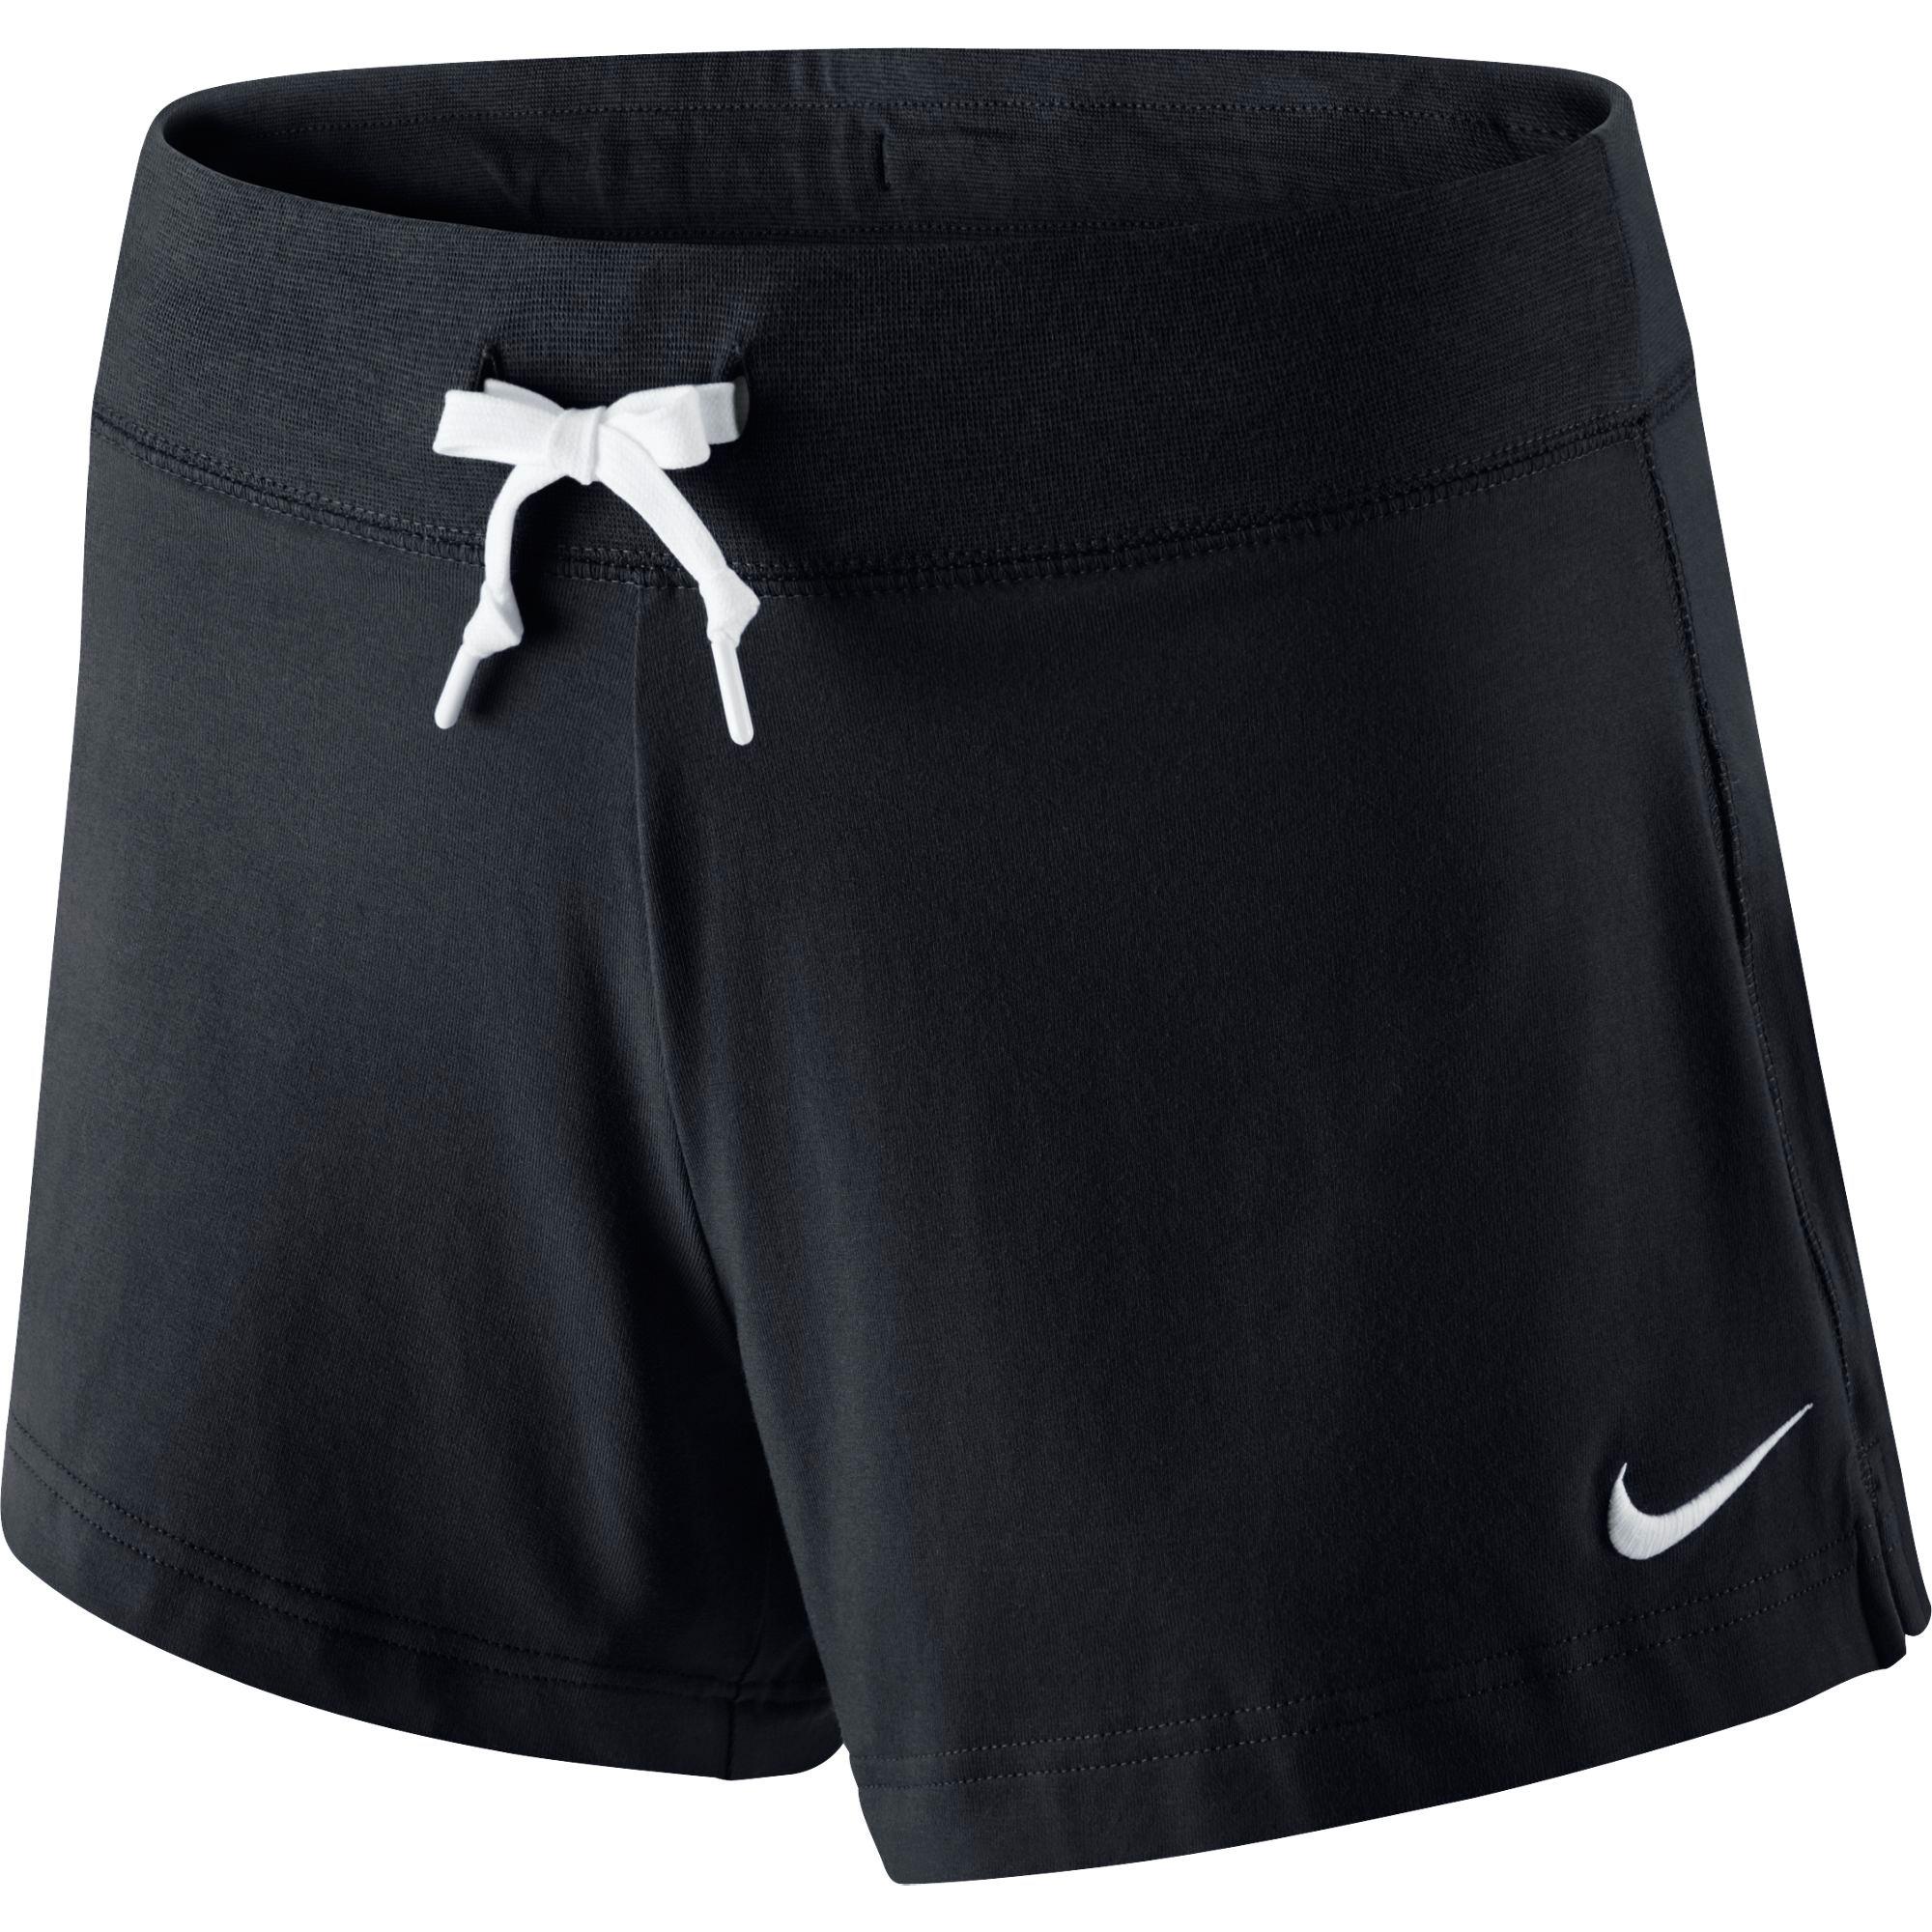 Шорты для занятий. Шорты Nike Sportswear. Шорты эластик найк. Nike джерси шорты. Nike Sportswear shorts Jersey.